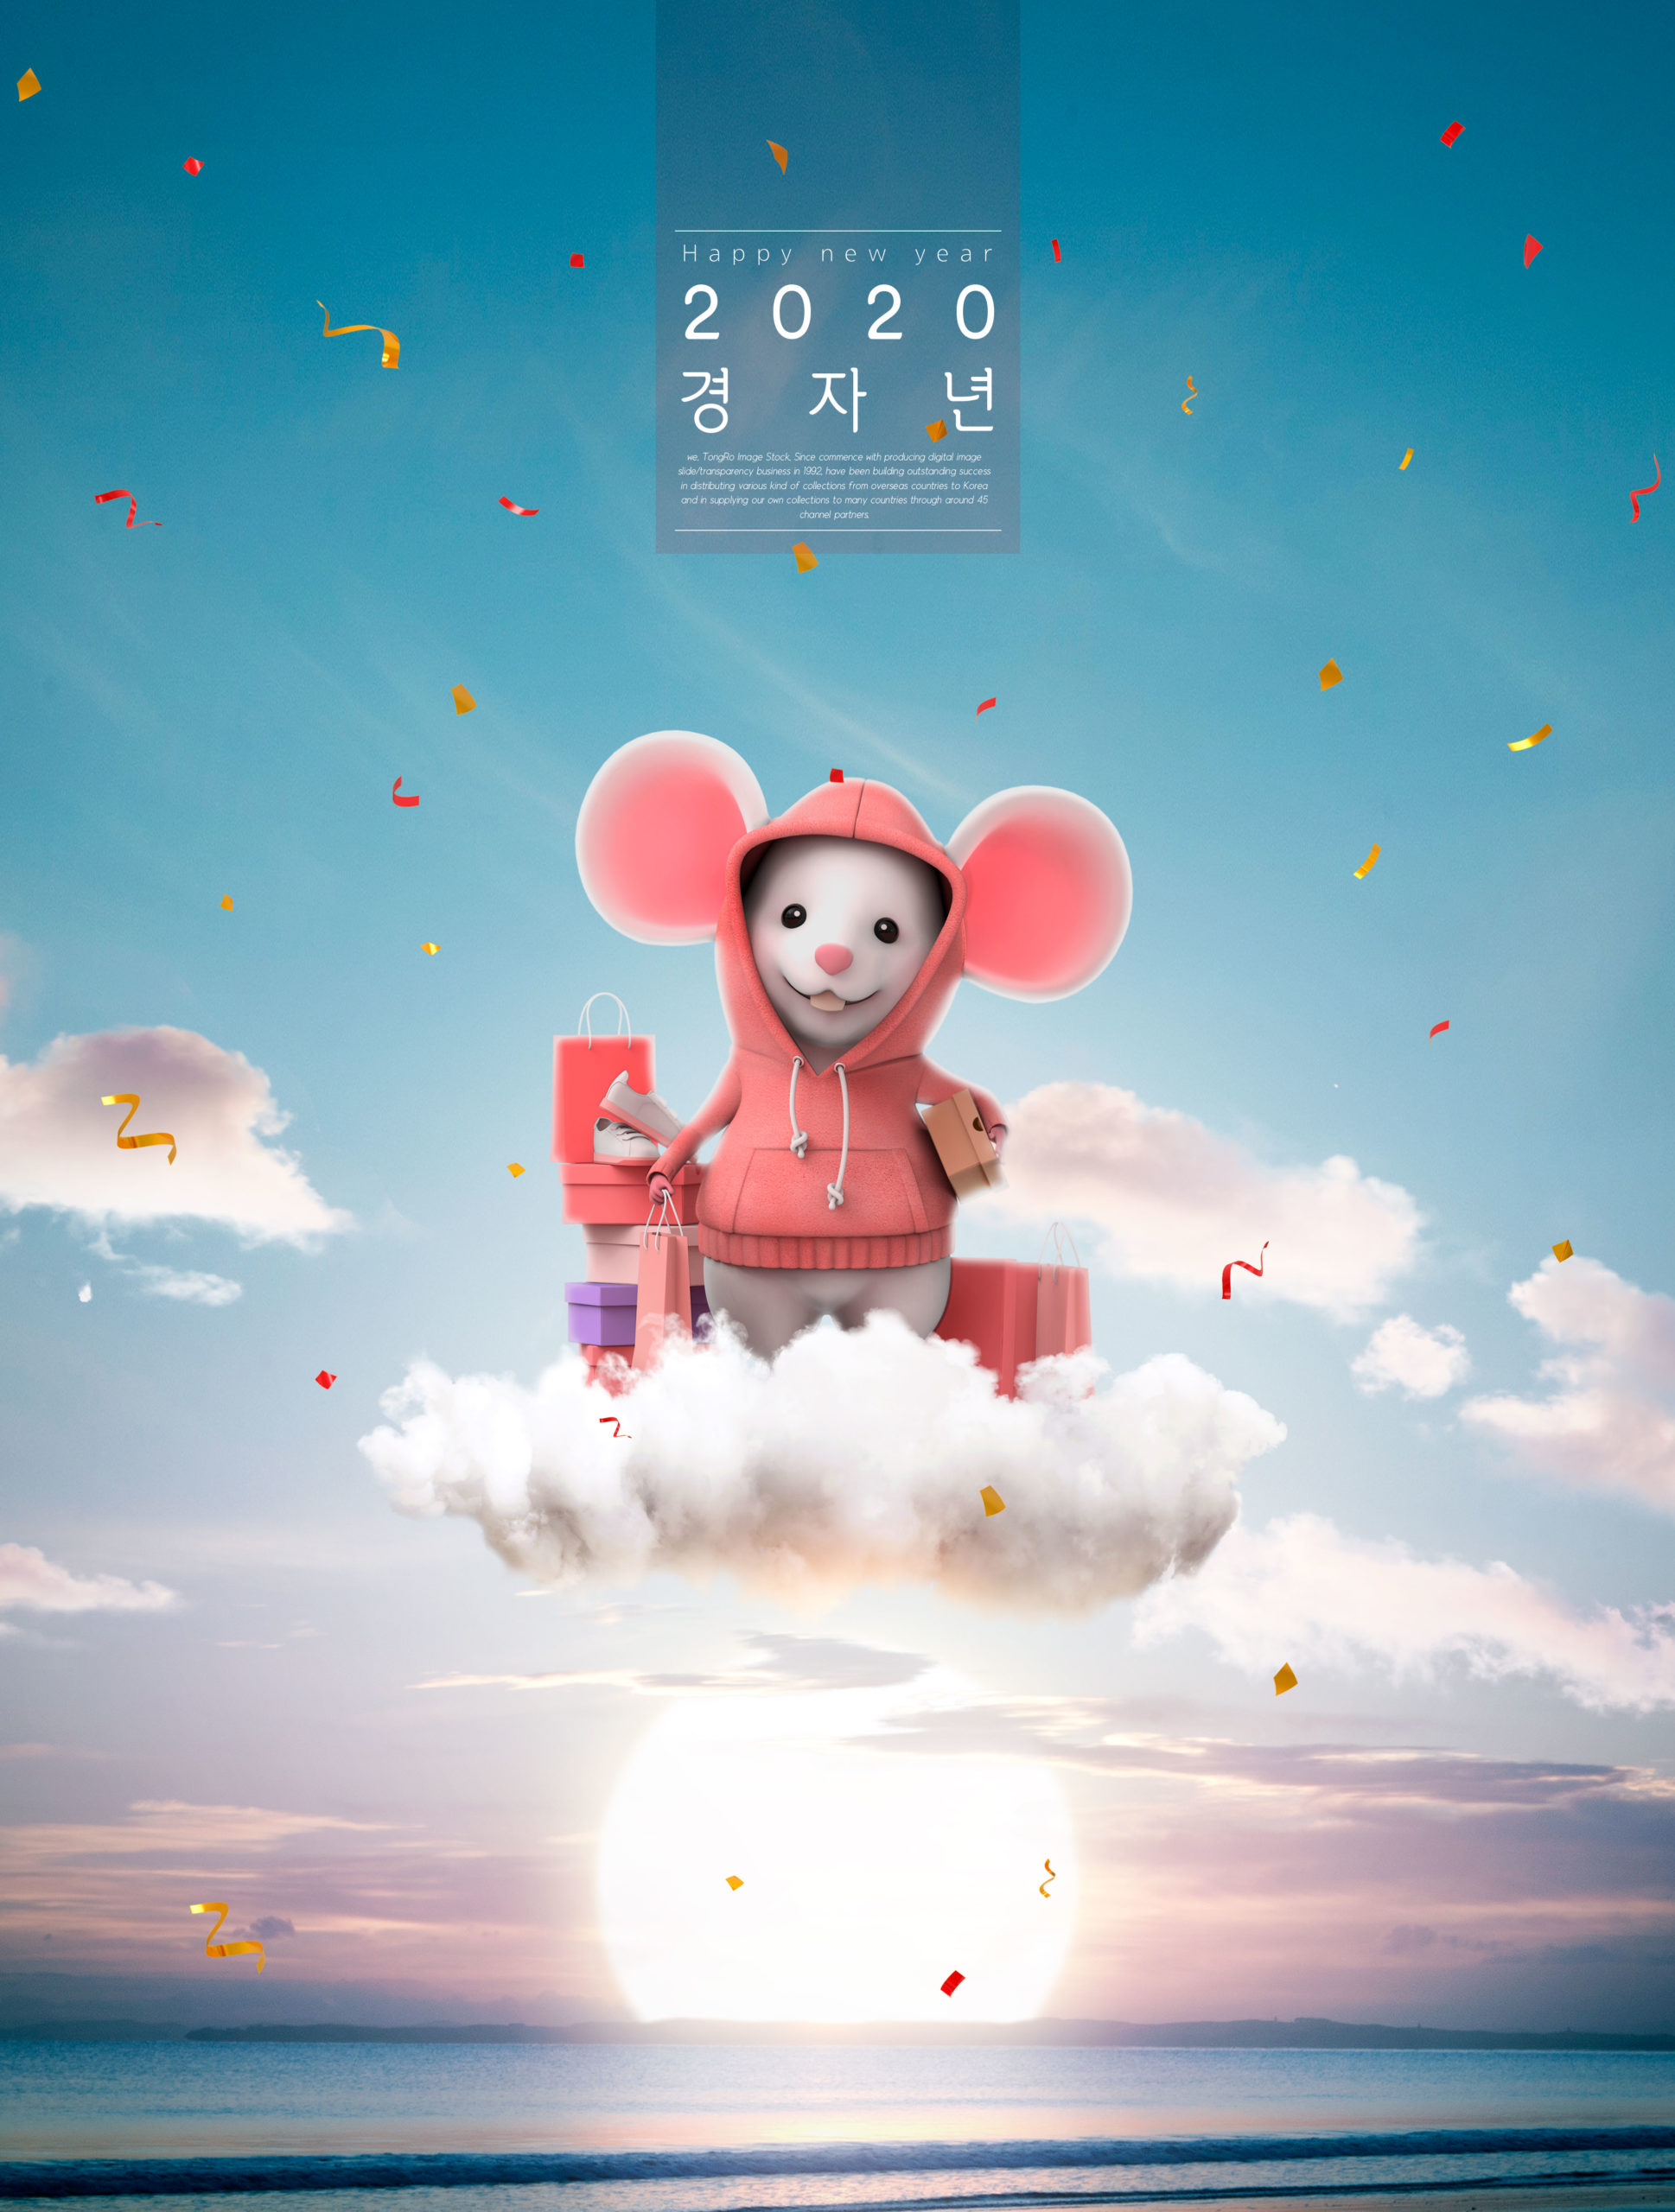 创意可爱的2020鼠年送礼祝福主题海报PSD素材蚂蚁素材精选模板插图